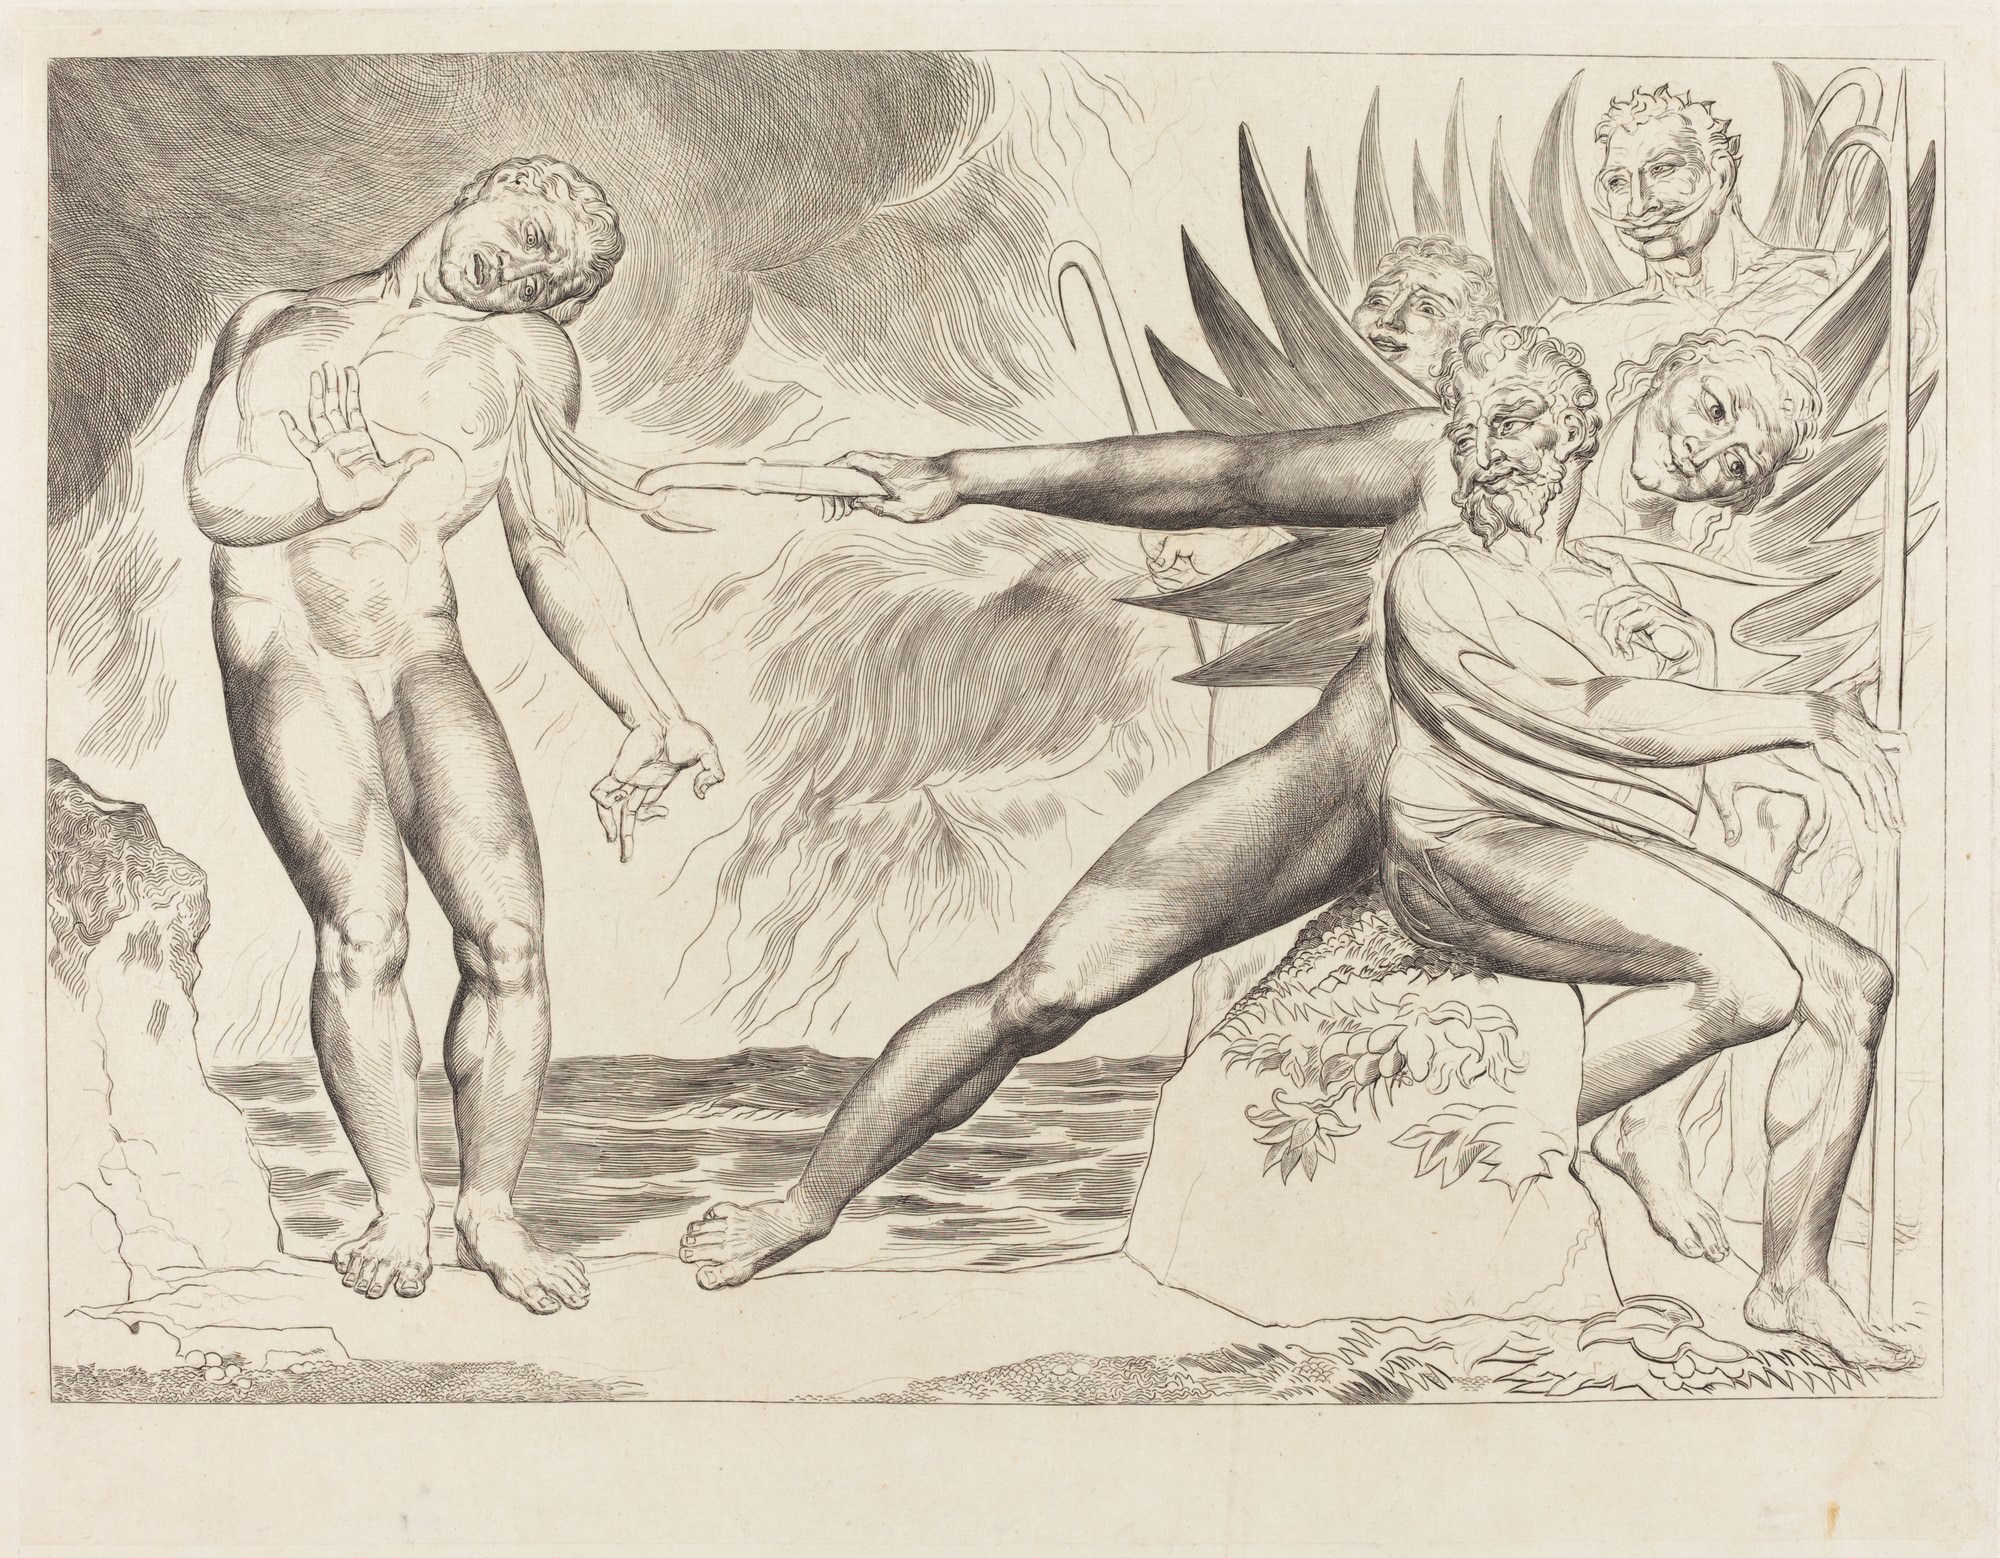 Σύκο.. 1 - Ο Κύκλος των διεφθαρμένων αξιωματούχων; η διάβολοι βασανιστική Ciampolo, 1827. Ουίλλιαμ Μπλέηκ. Εθνική Γκαλερί τέχνης, Ουάσιγκτον. Rosenwald συλλογή. «Μια Arte, Σύμφωνα με τον (Blake), διαισθητική γνώση δεν αφορά ατομικά τα πράγματα, αλλά τα αιώνια και υπεράνθρωπες δυνάμεις της δημιουργίας ". (ARGAN, 1988, p. 35).